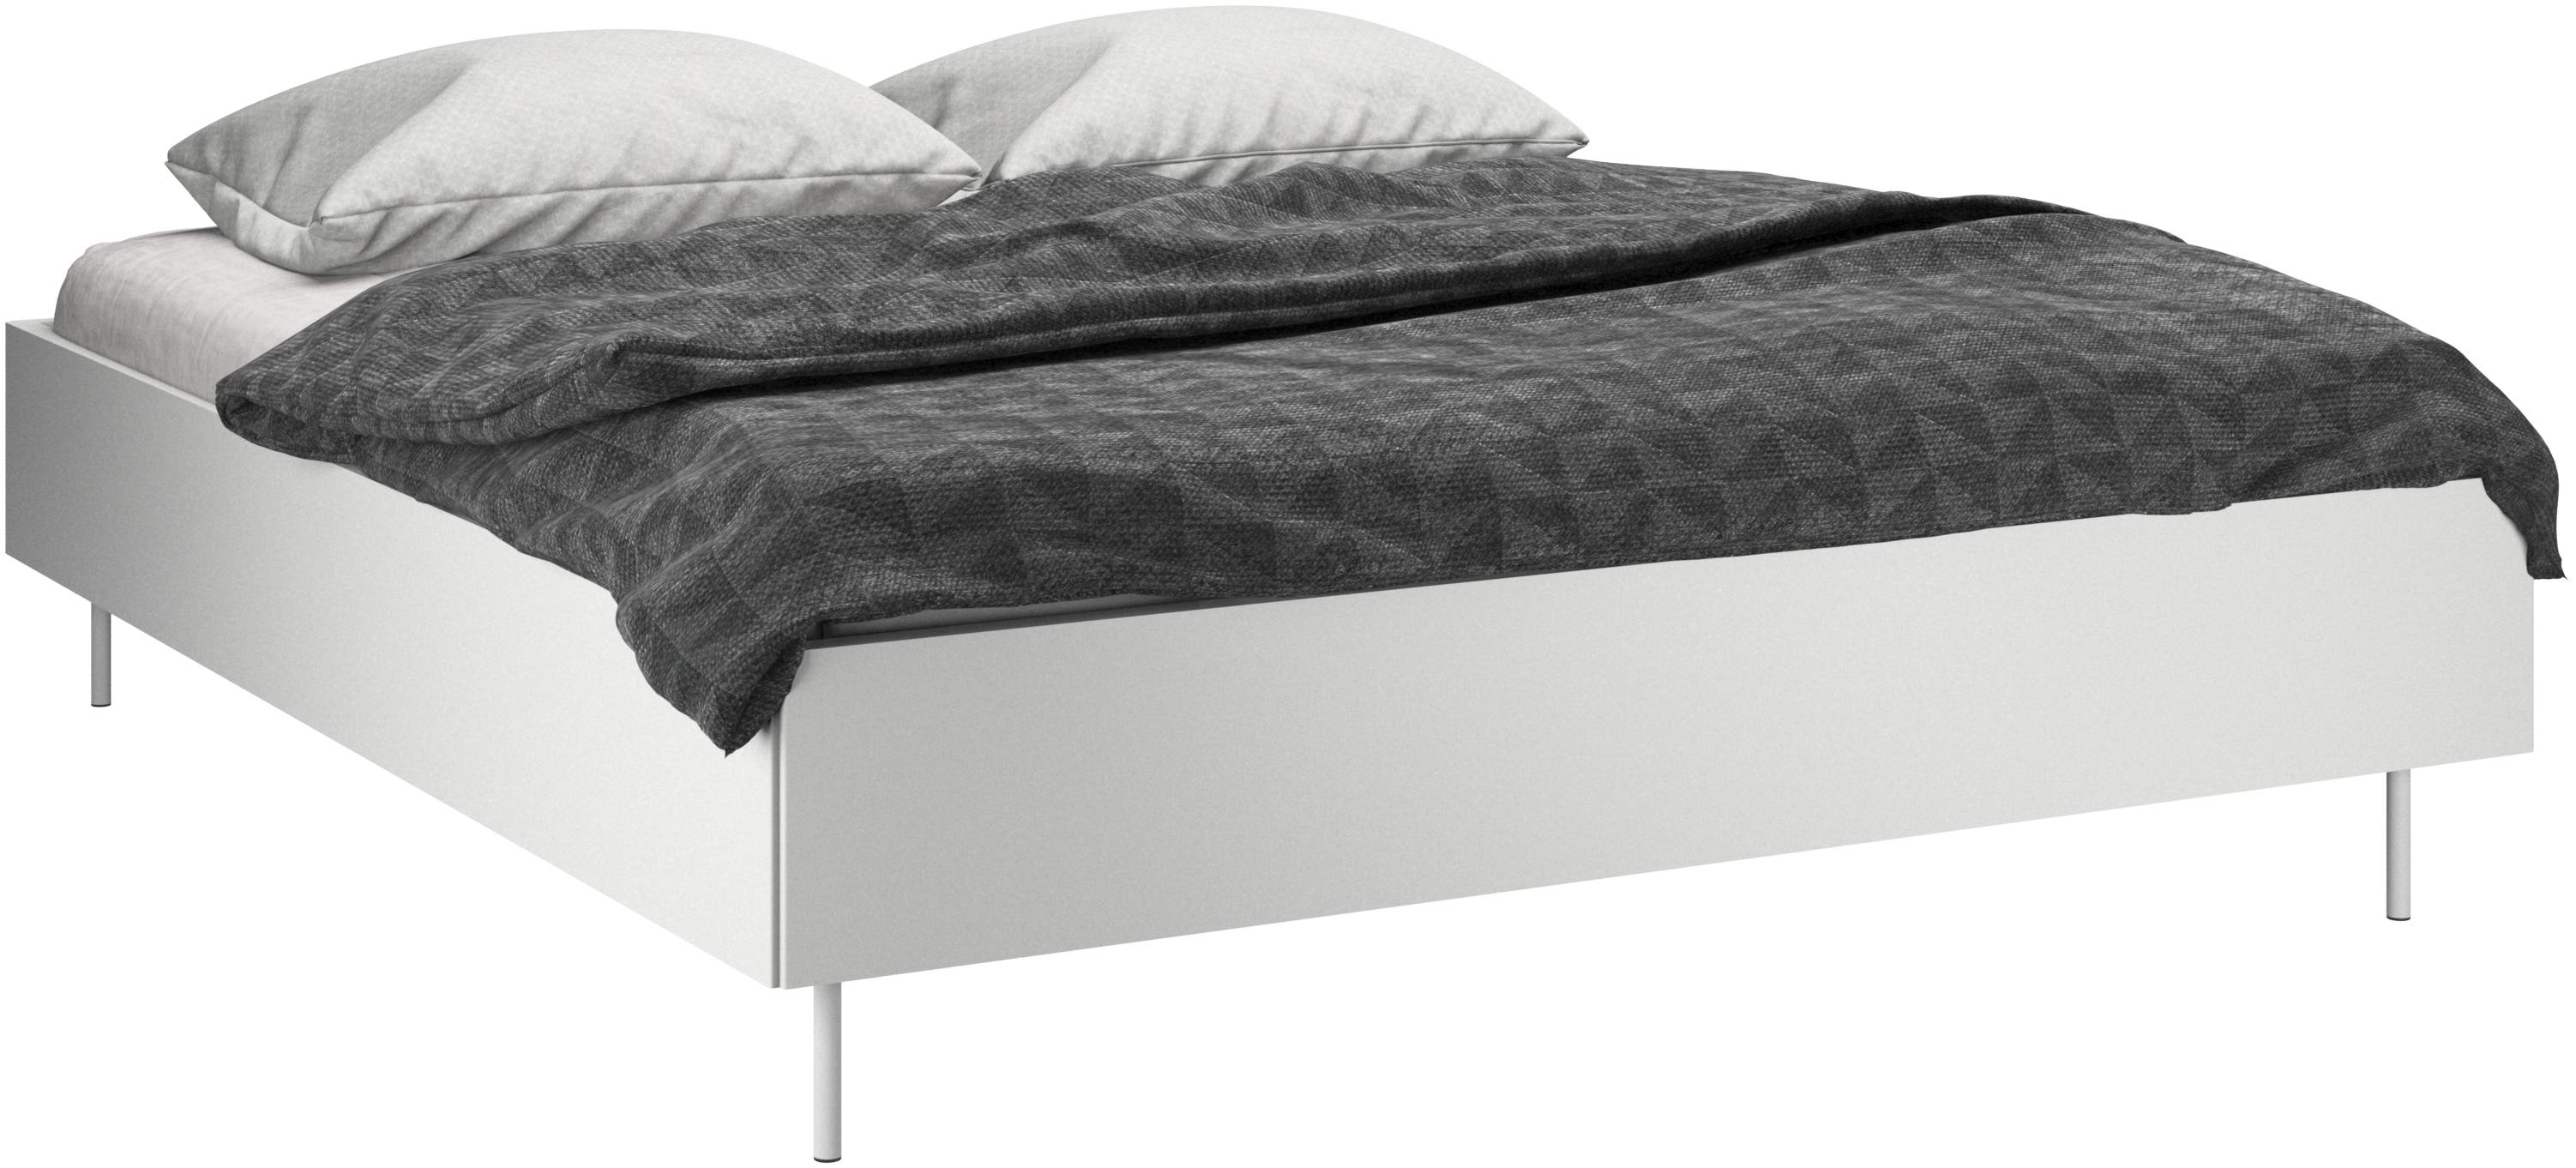 Designer beds | Danish furniture designs | BoConcept